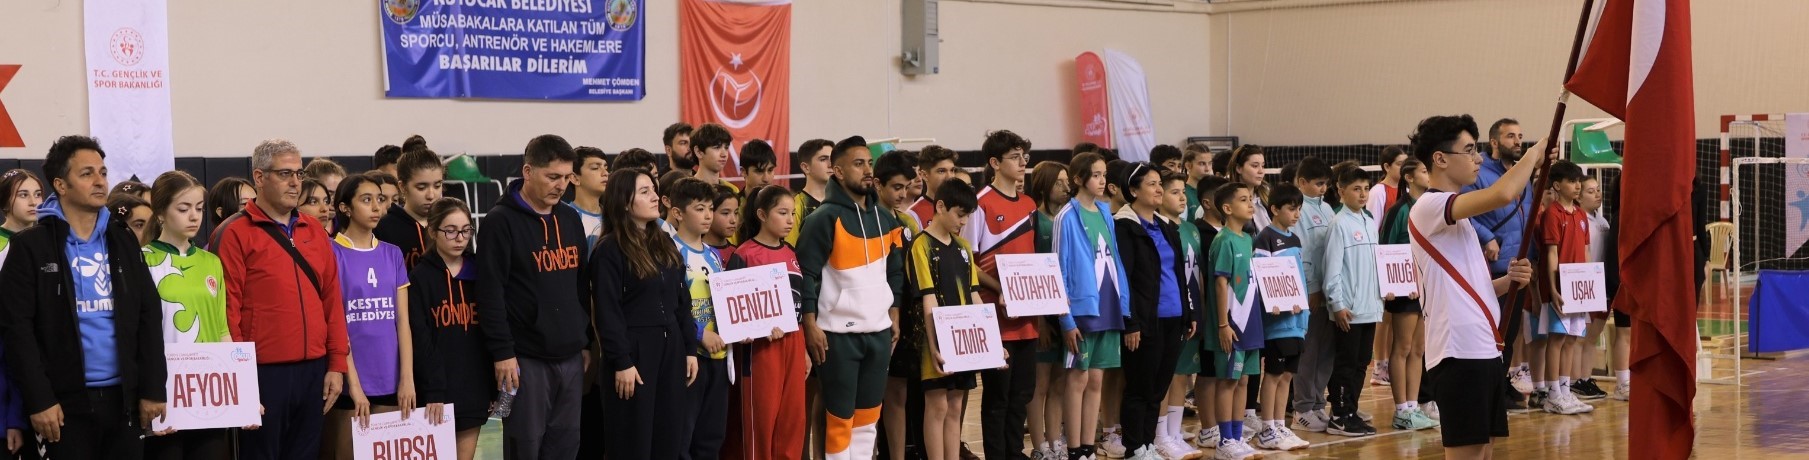 Manisalı Genç Yeteneklerin Badminton Mücadelesi Başladı (2)